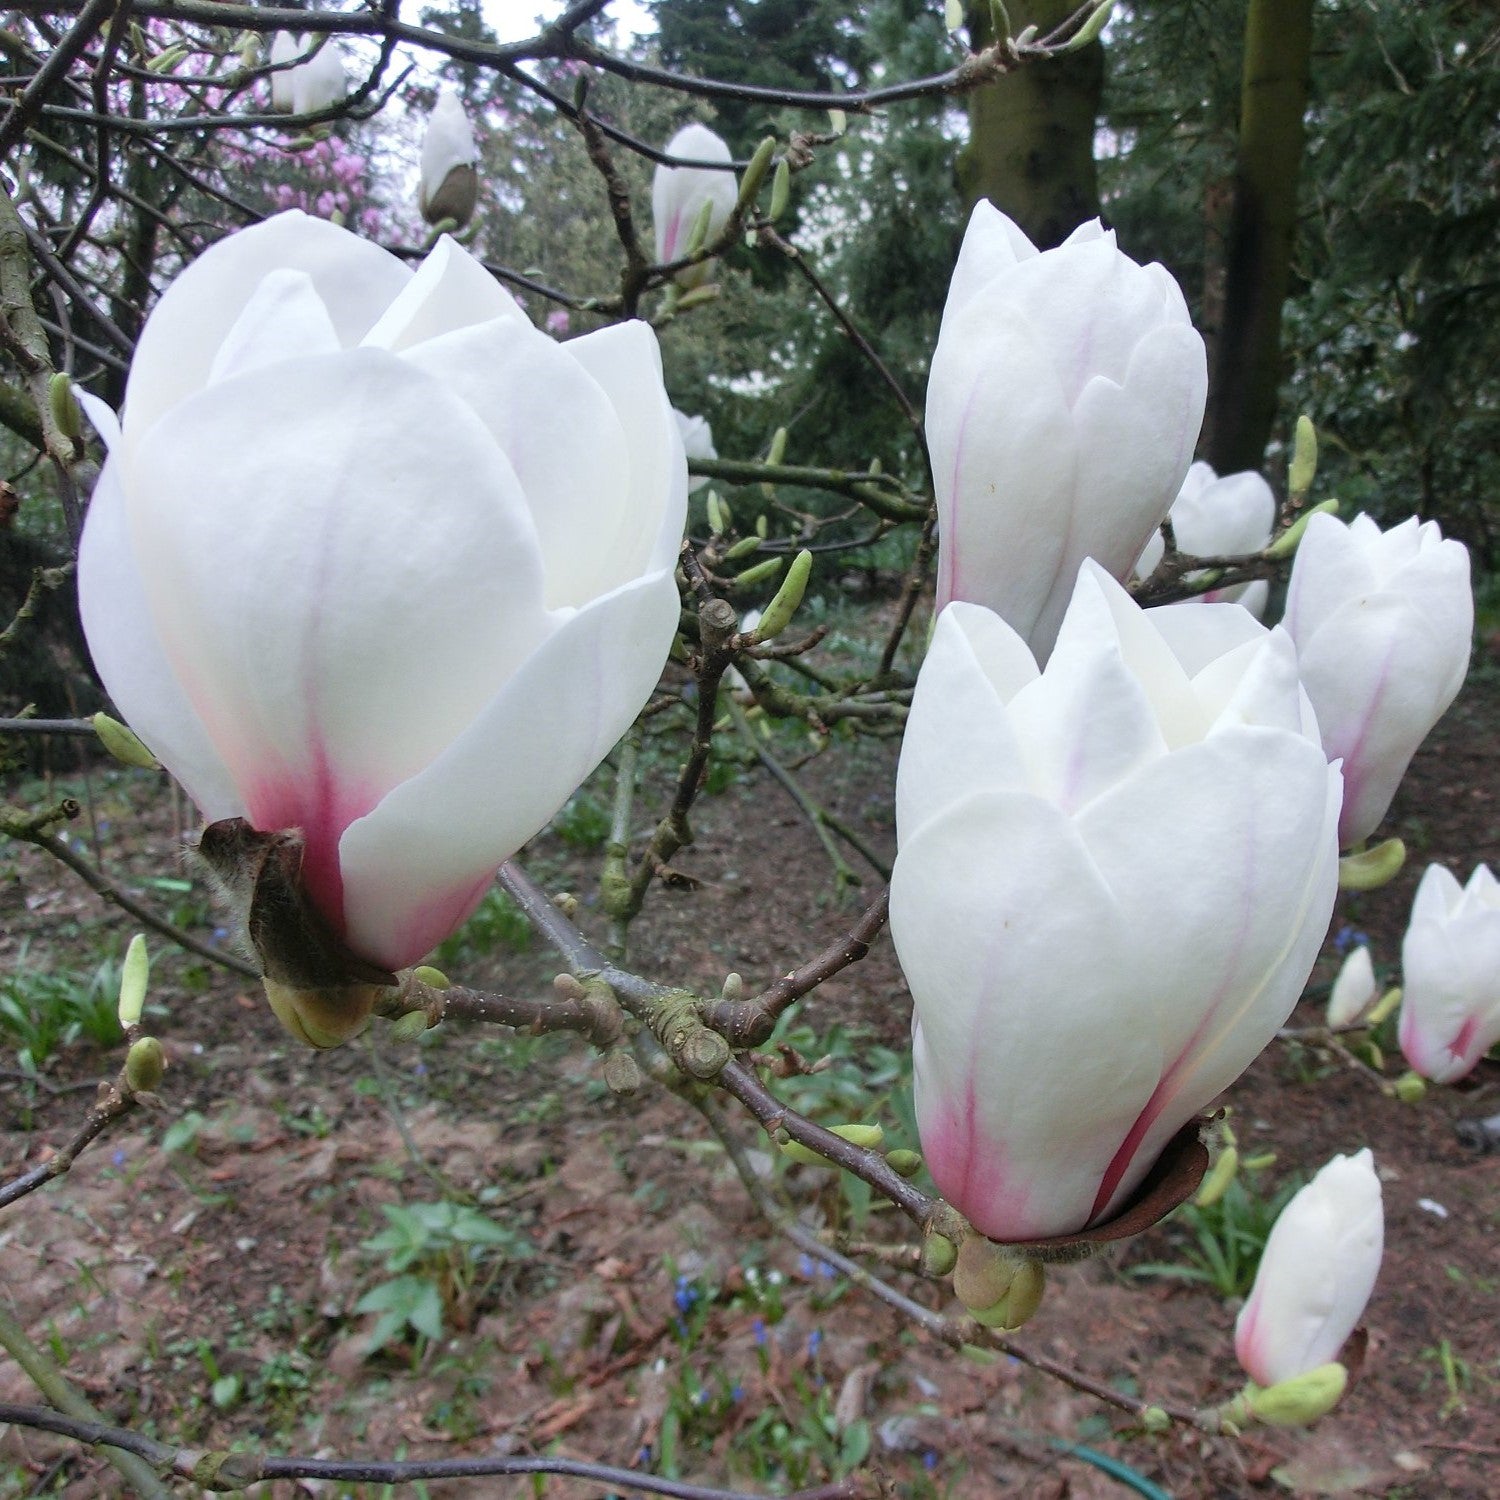 Magnolia soulangeana "White Giant"